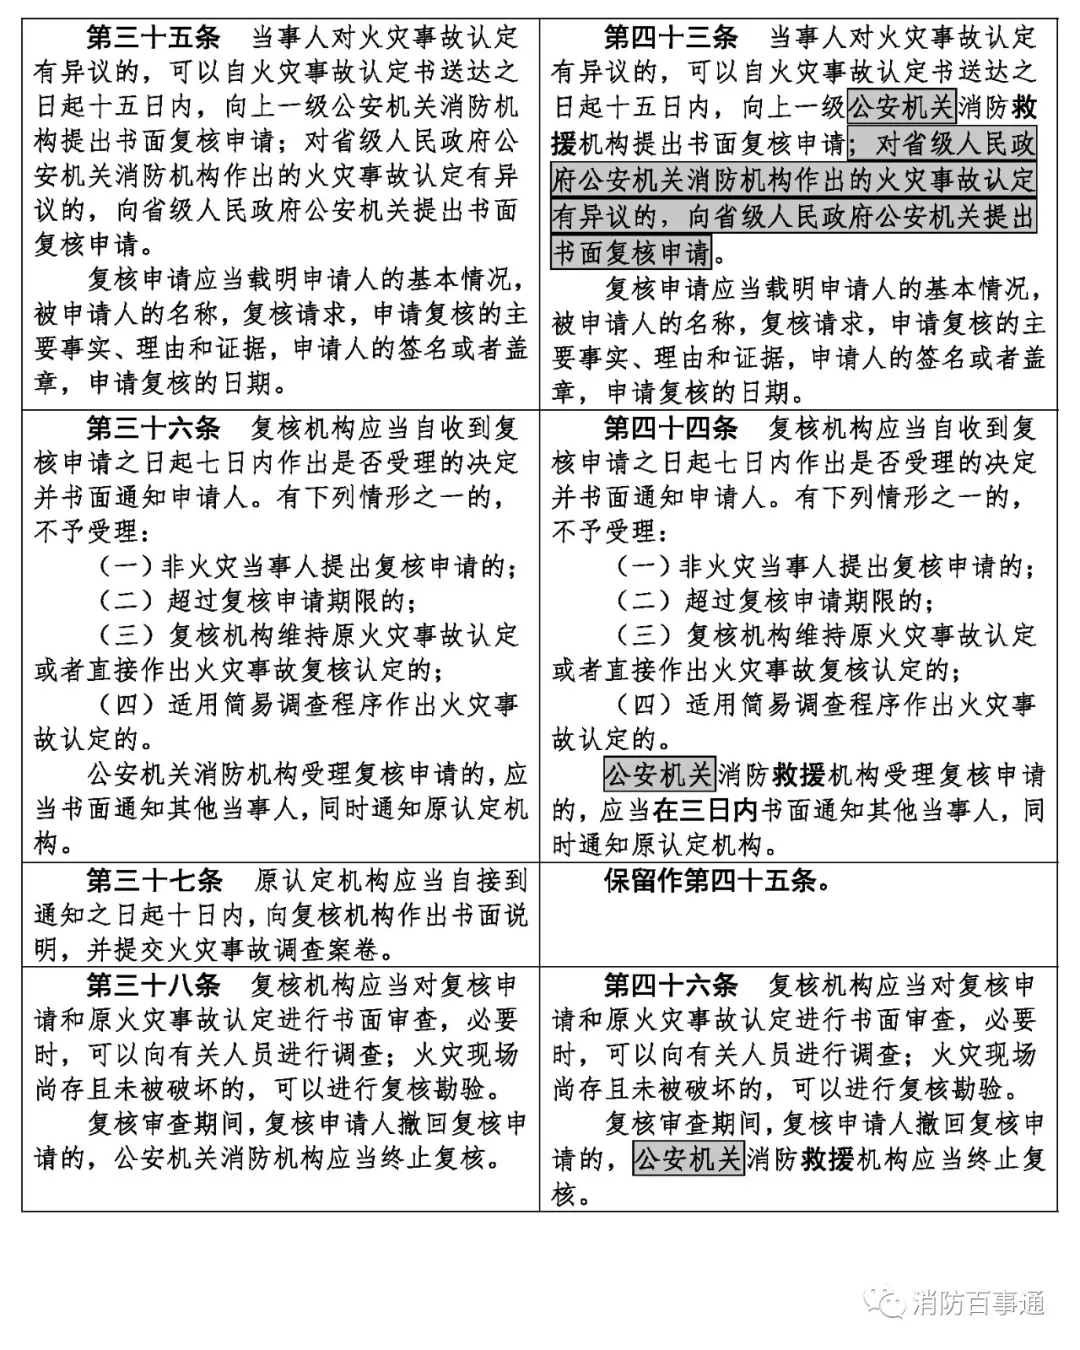 武邑县人民政府网站 规范性文件 公安部令第121号：火灾事故调查规定